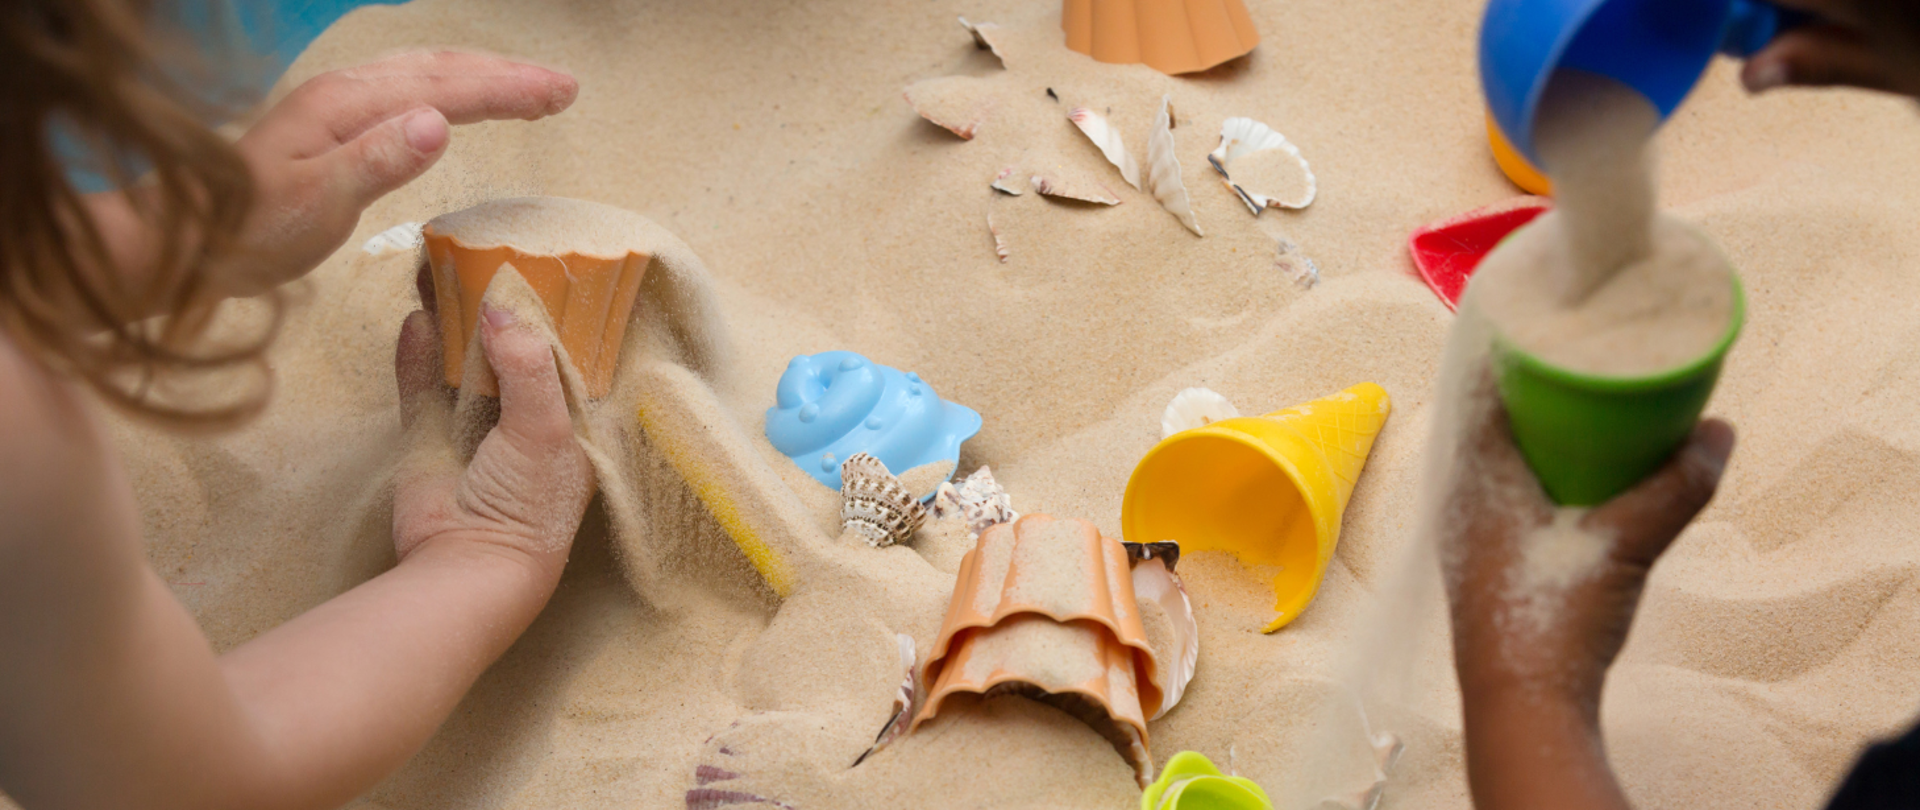 Zdjęcie przedstawia piasek na plaży i ręce dzieci bawiące się w piasku przy użyciu foremek. W piasku dodatkowo prócz foremek rozrzucone są muszelki.